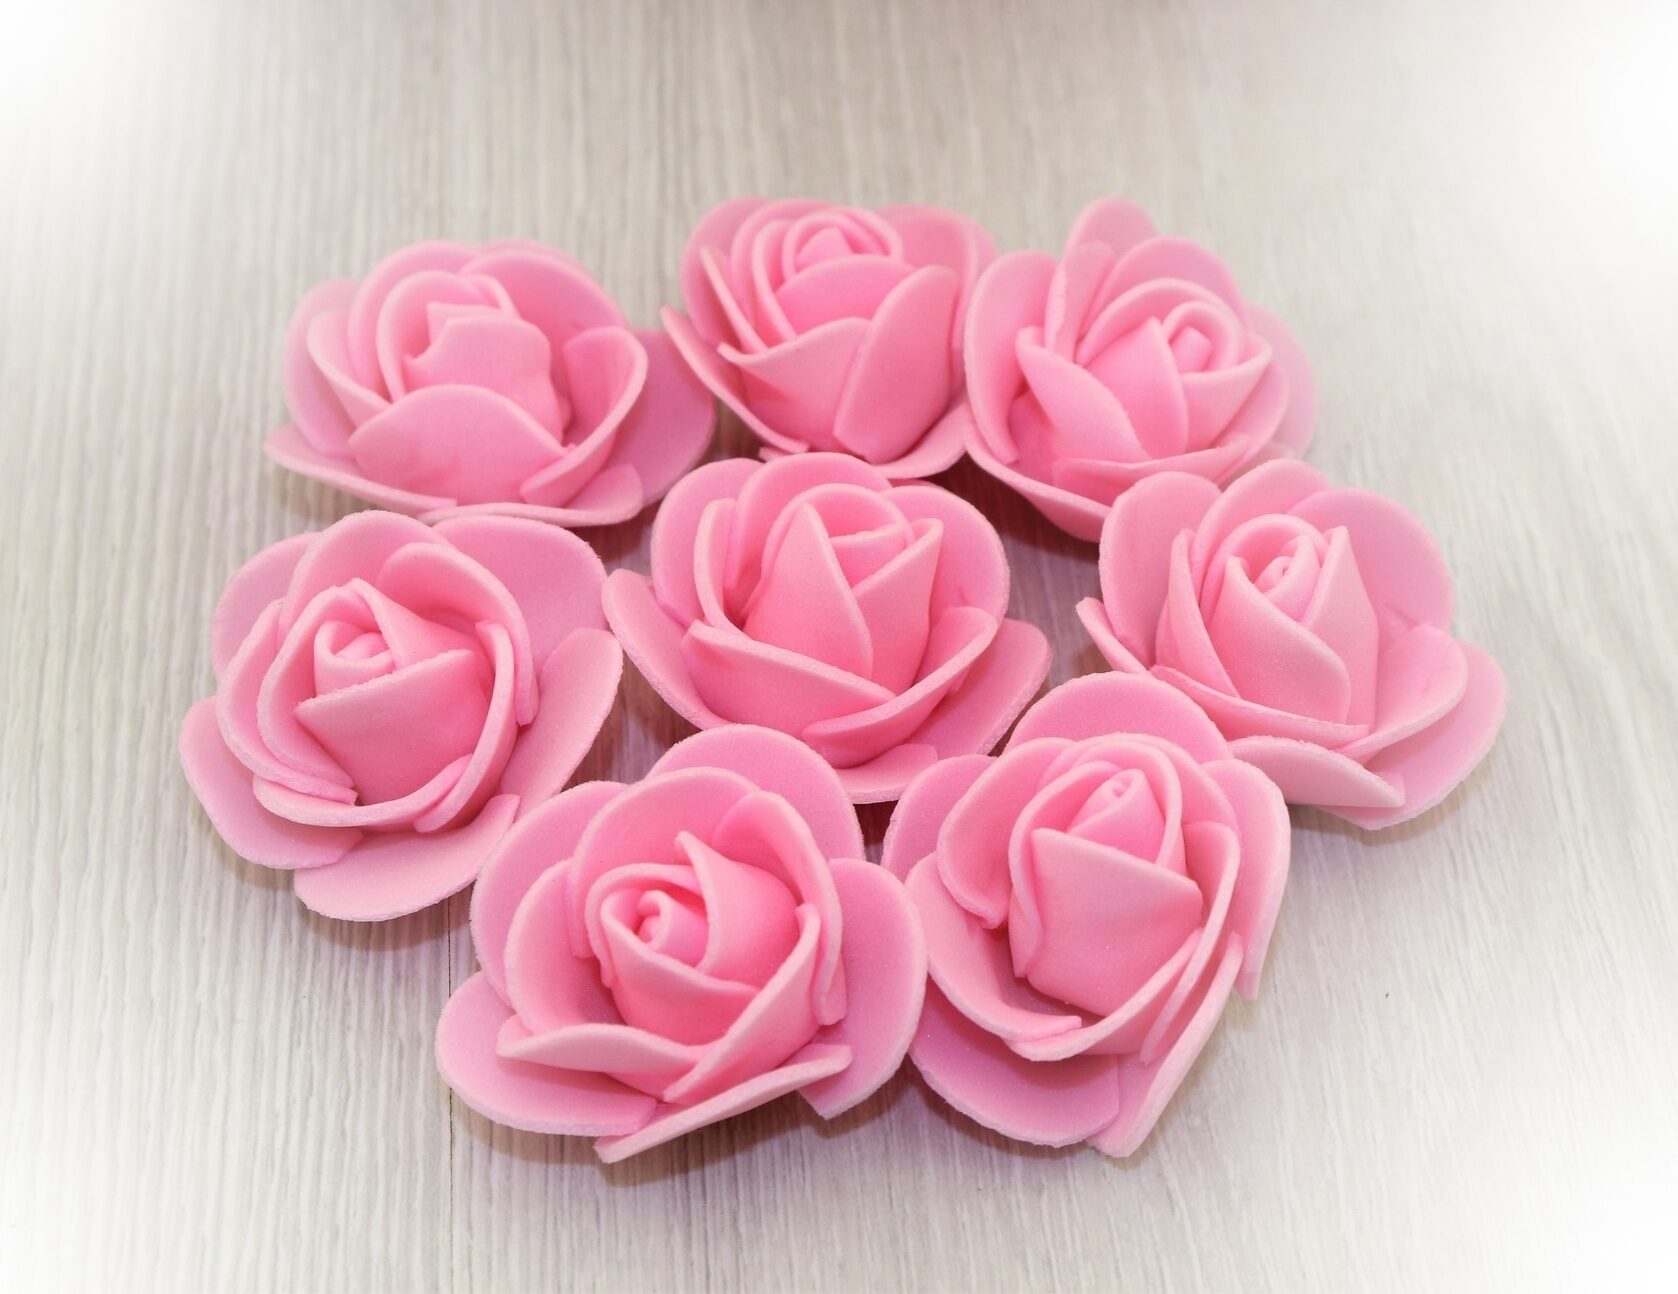 Цена розочки. Фоамиран розы. Розочки фоамиран. Бутончики роз из фоамирана. Розочки из фоамирана розовые.